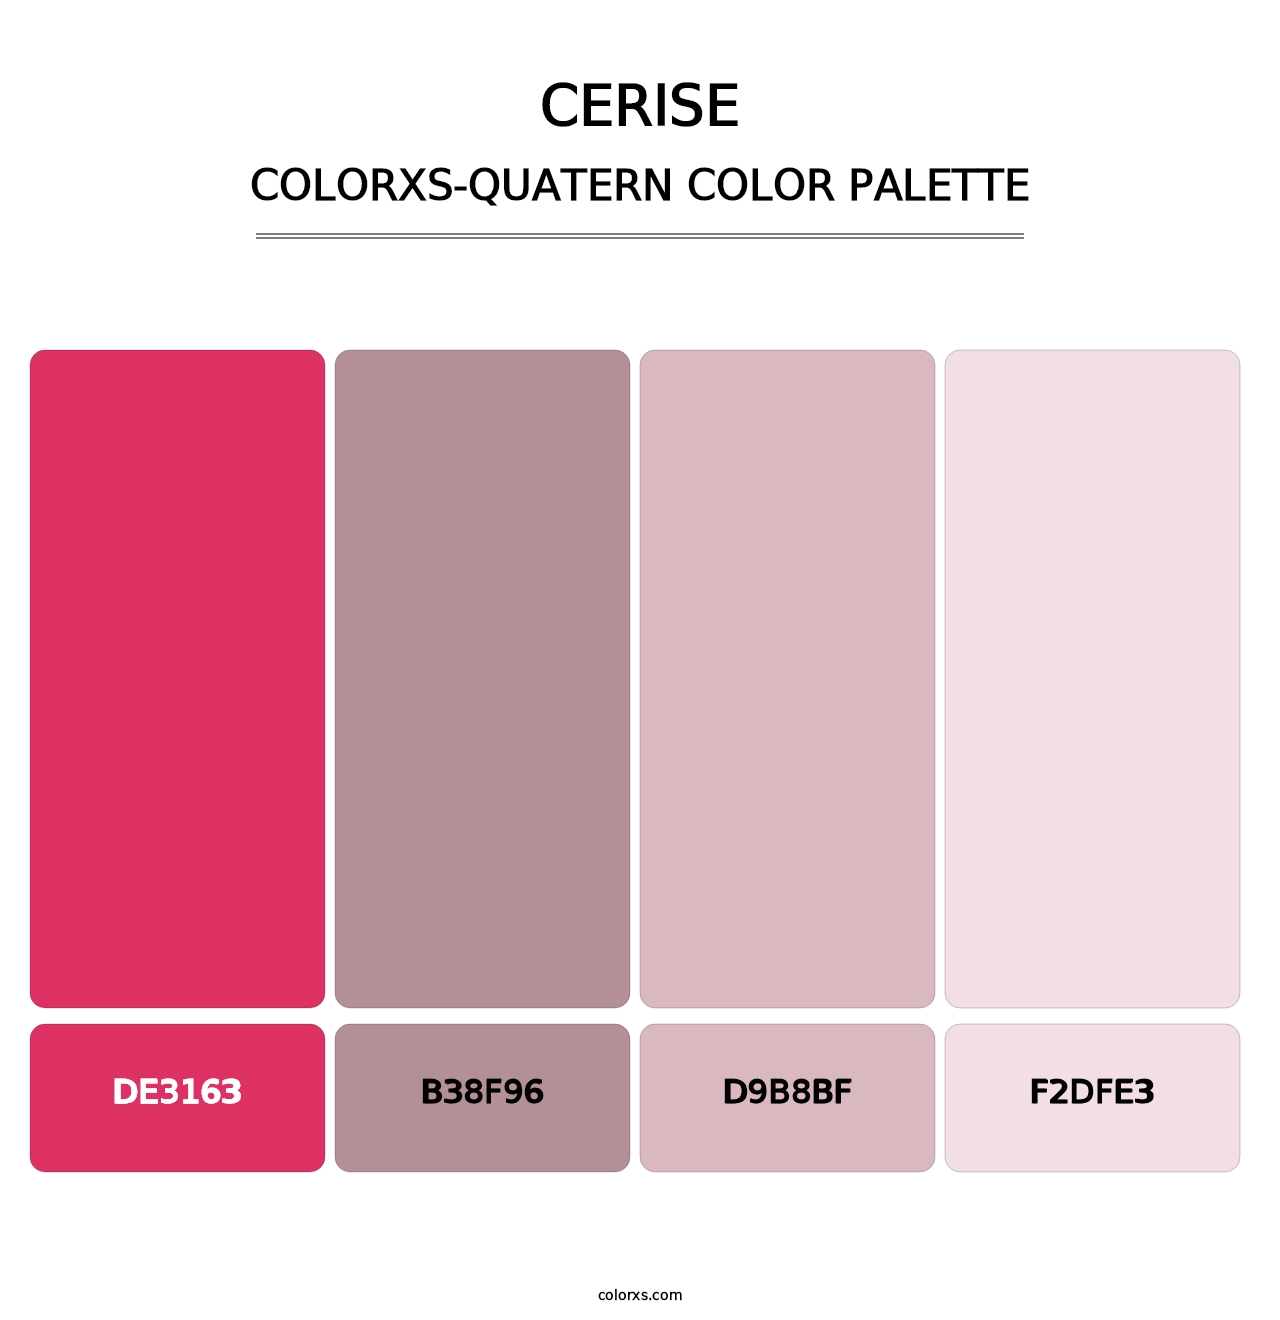 Cerise - Colorxs Quatern Palette